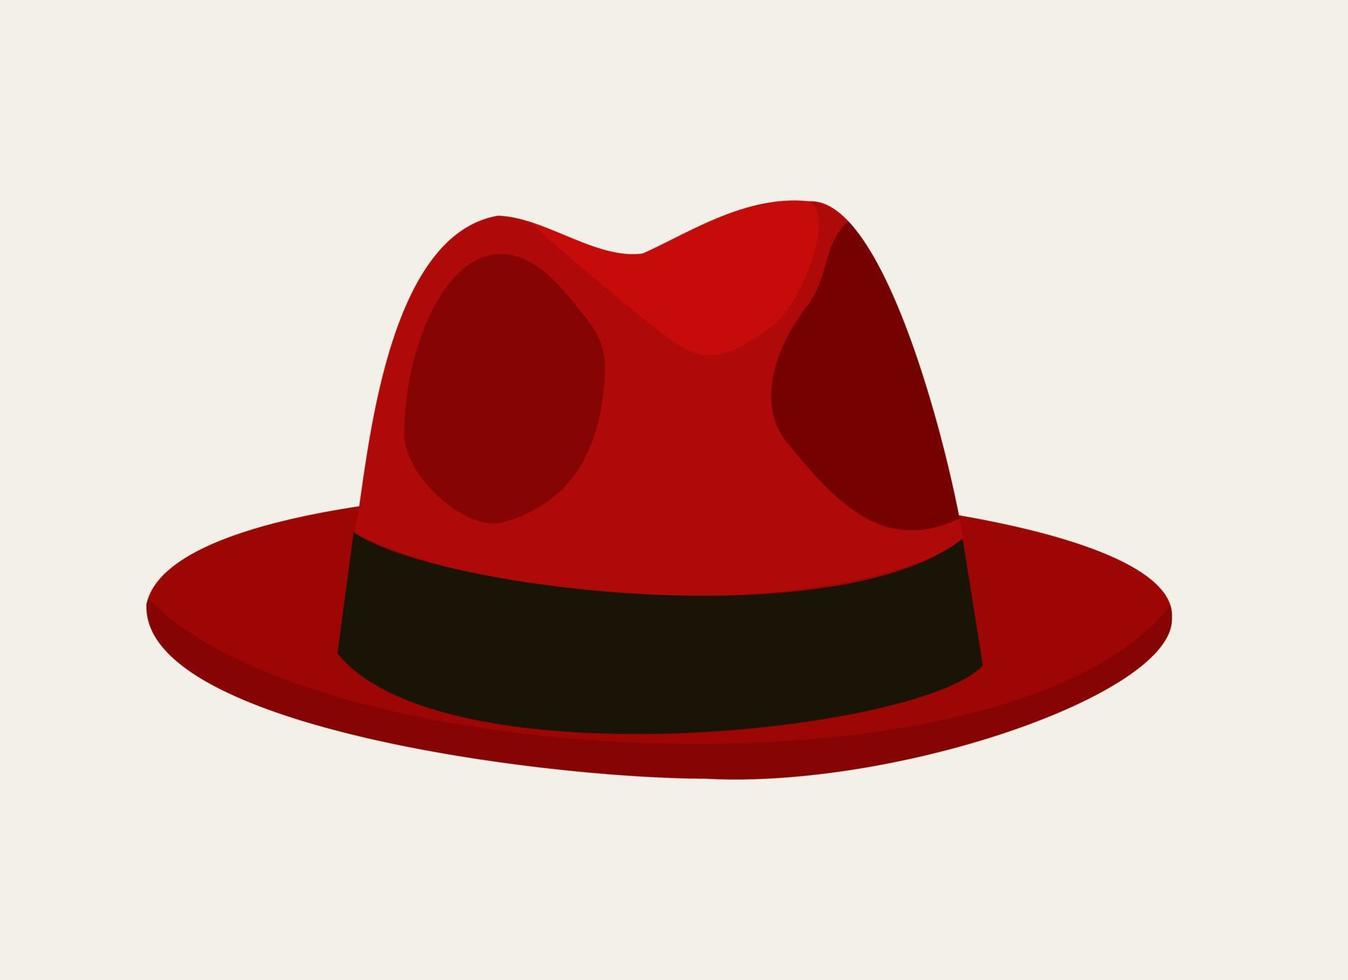 vektor isolerat illustration av röd fedora hatt.